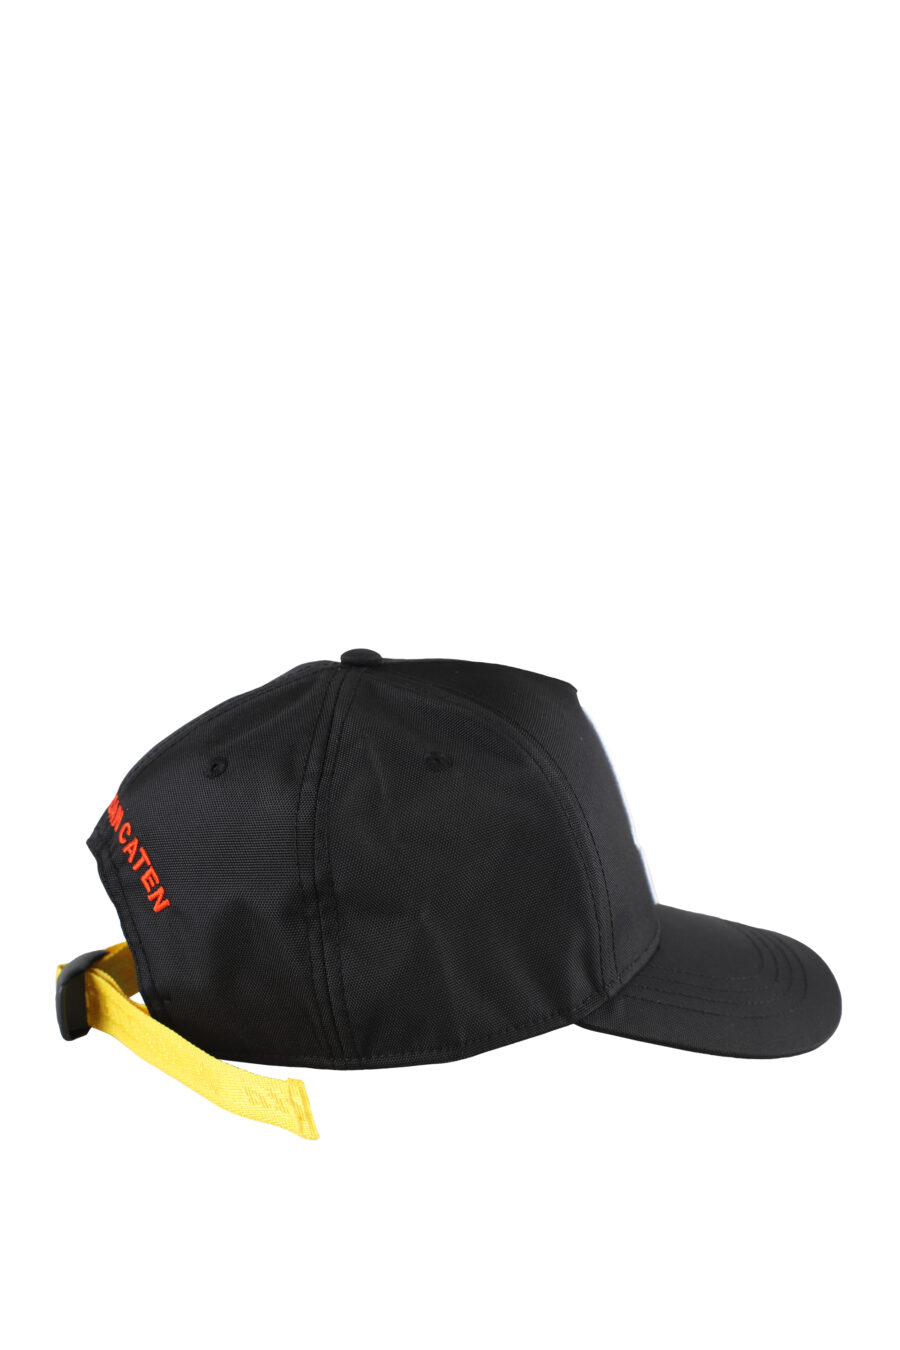 Gorra negra regulable con cinta amarilla y parche "invicta" - IMG 5184